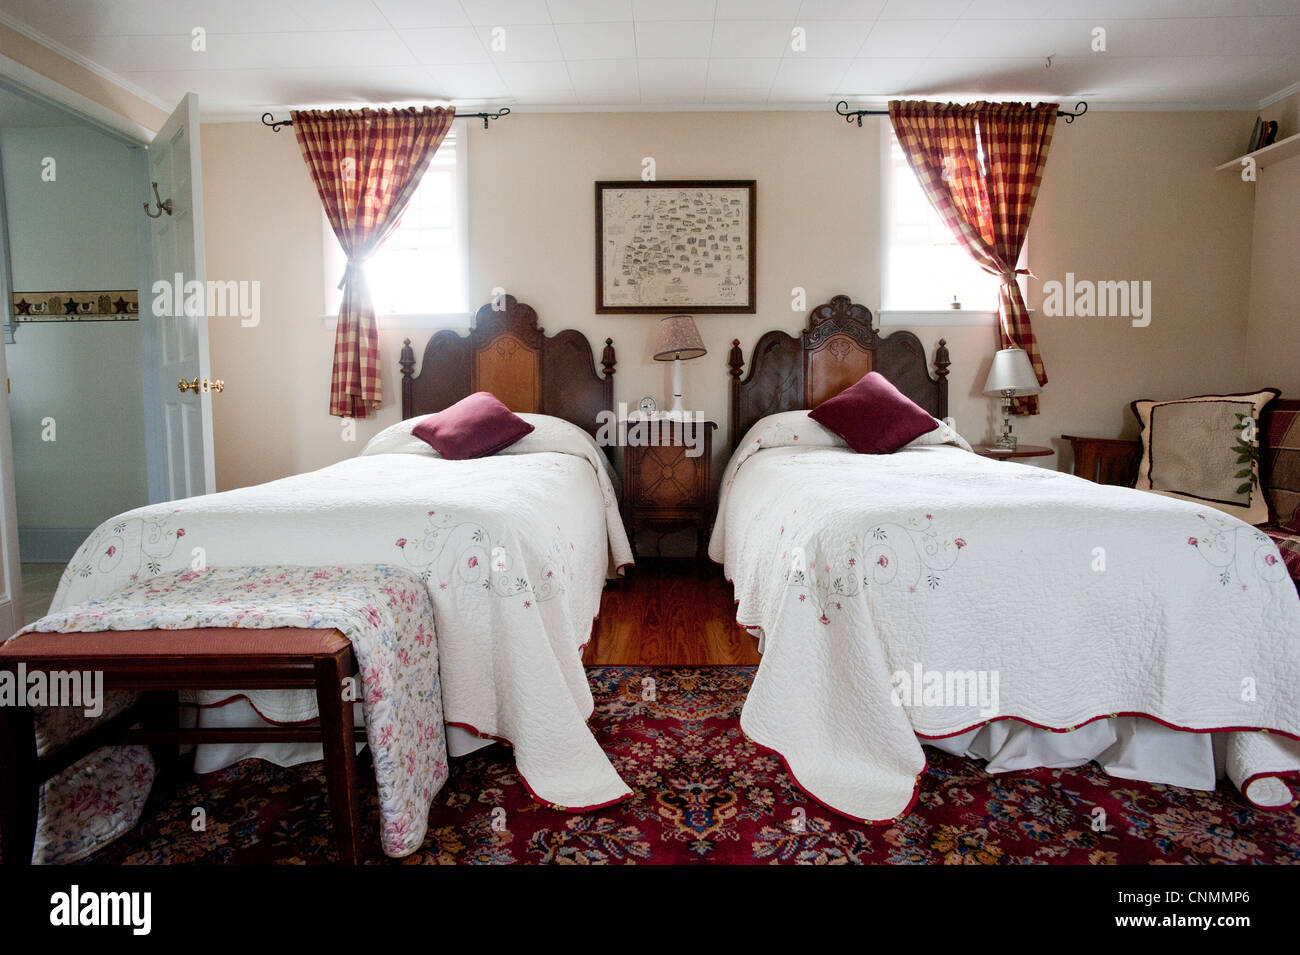 Dormitorio amueblado con antigüedades en agroturismo bed and breakfast Foto de stock